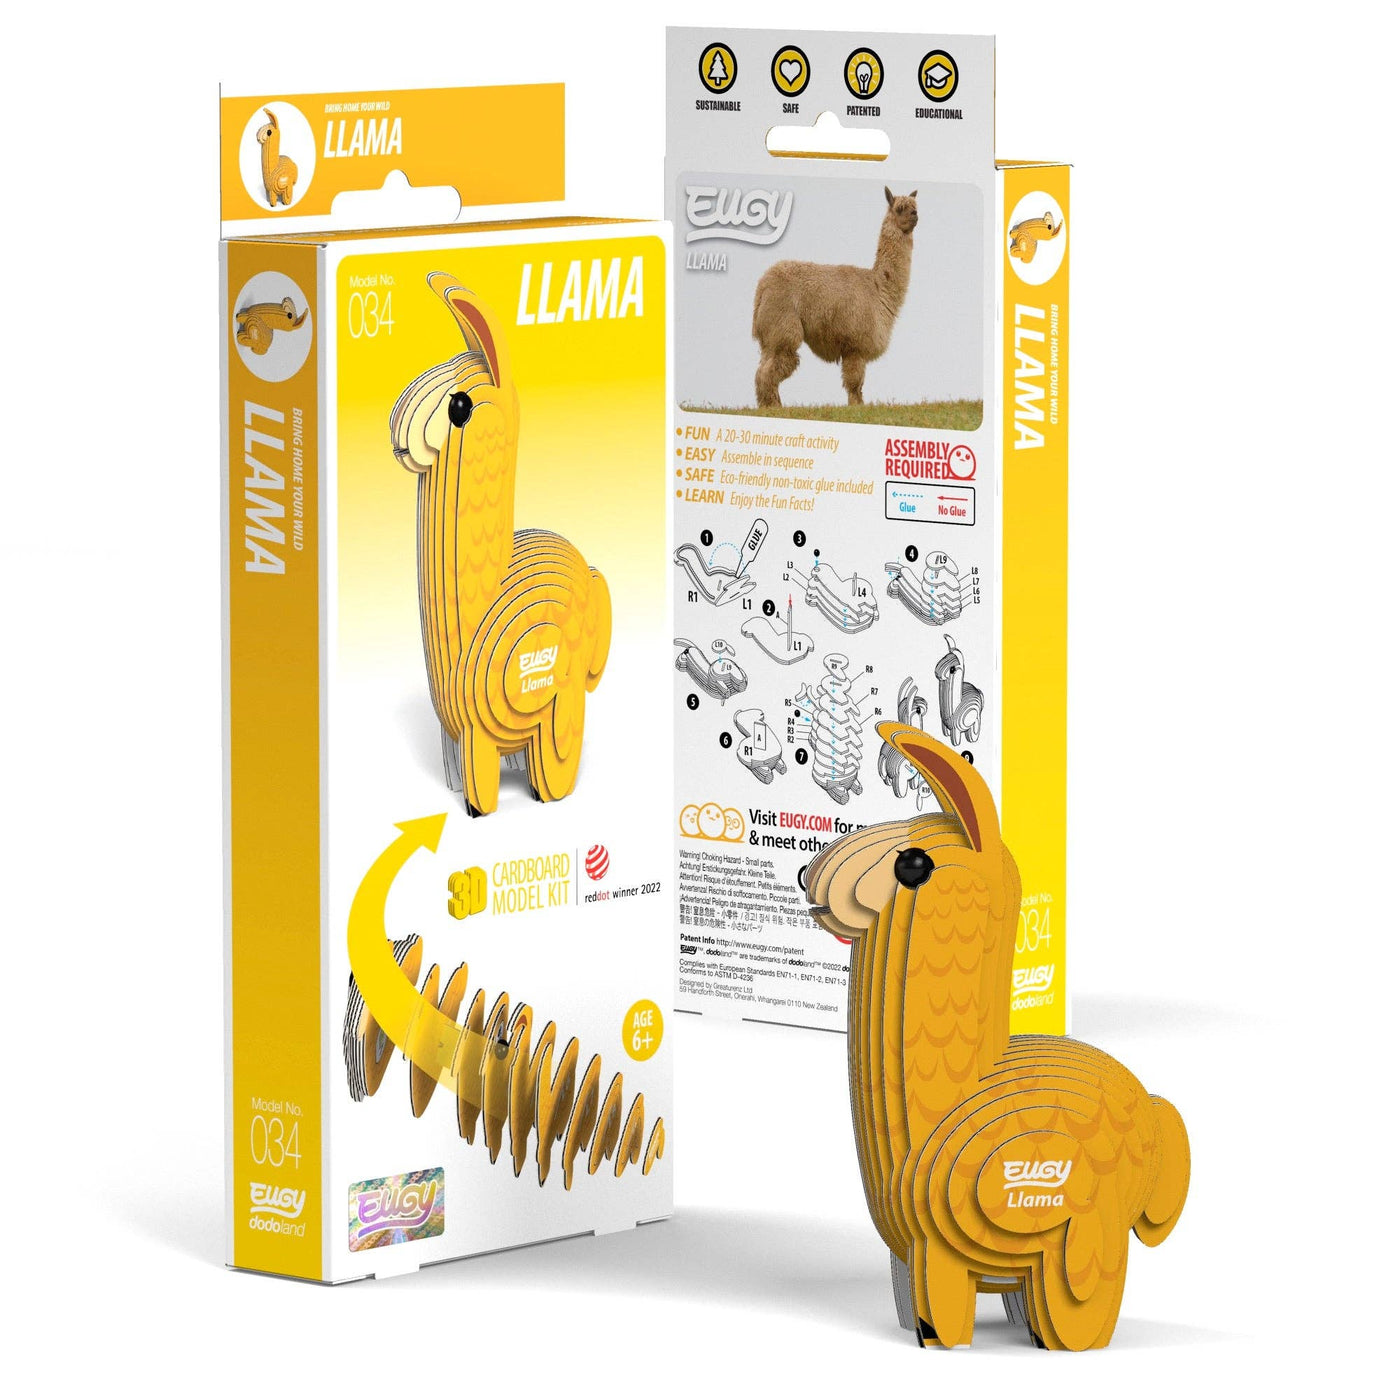 Llama EUGY - 3D Puzzle